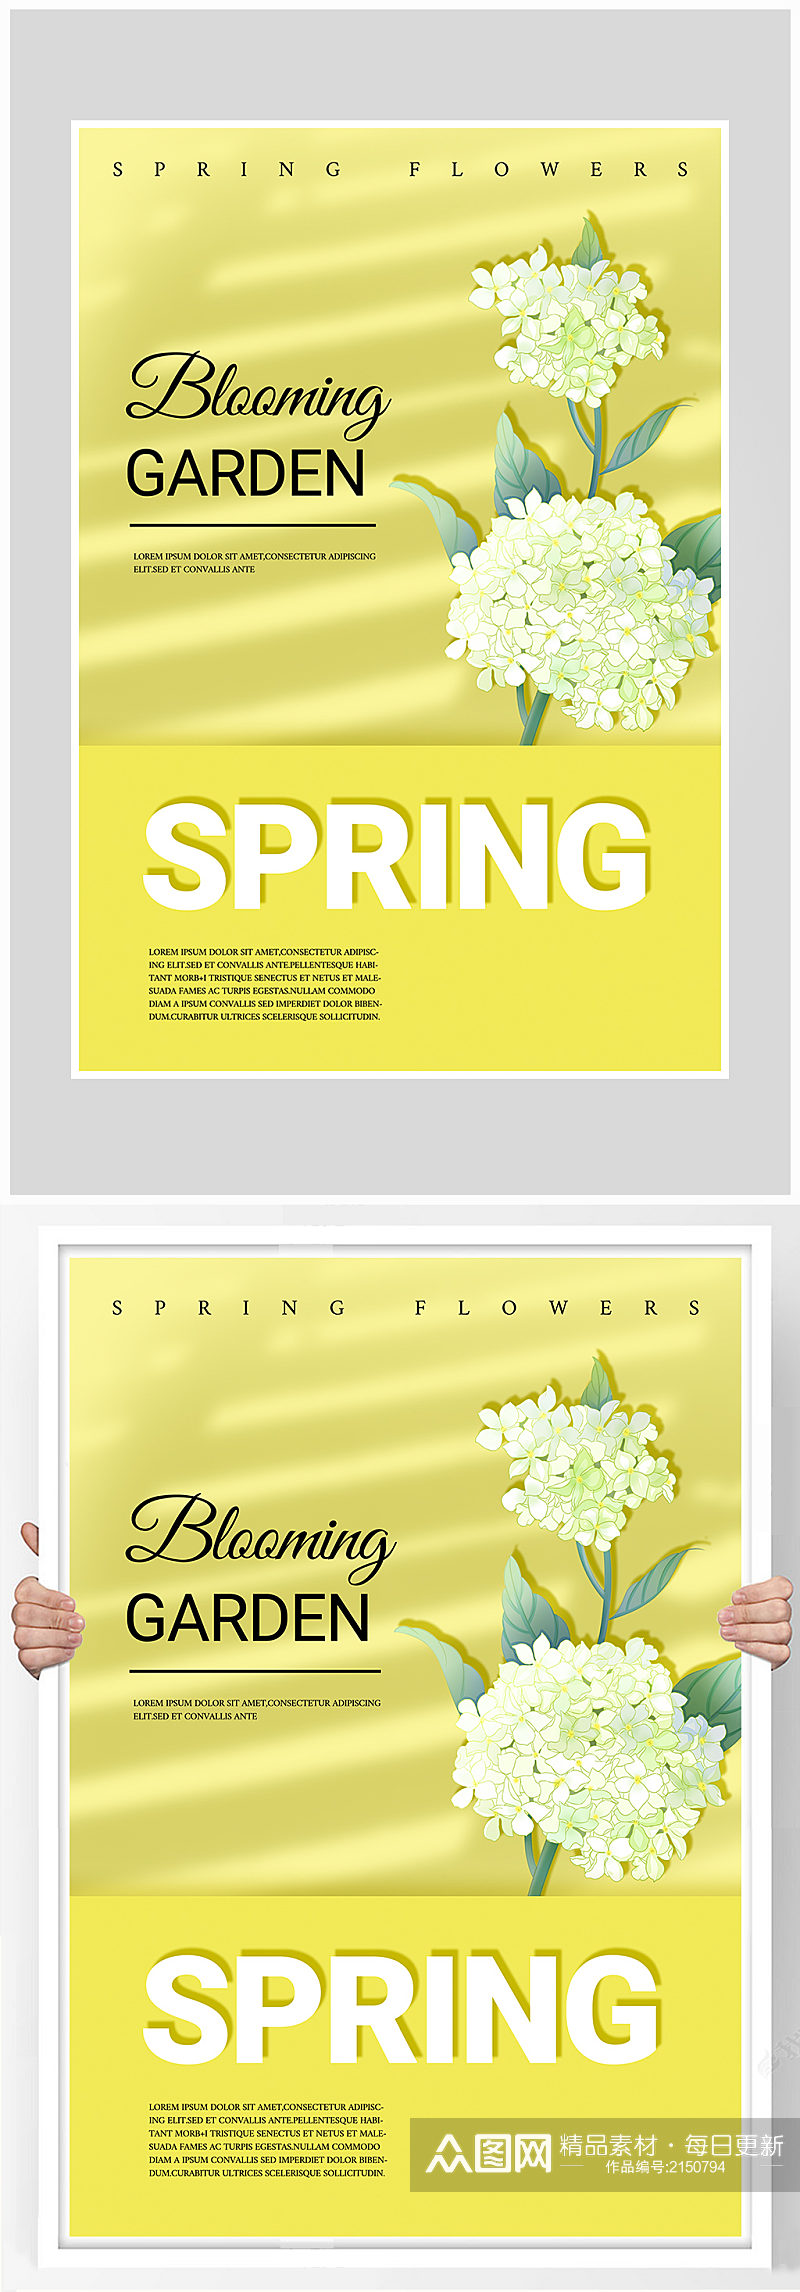 创意质感简约清新春季促销海报设计素材